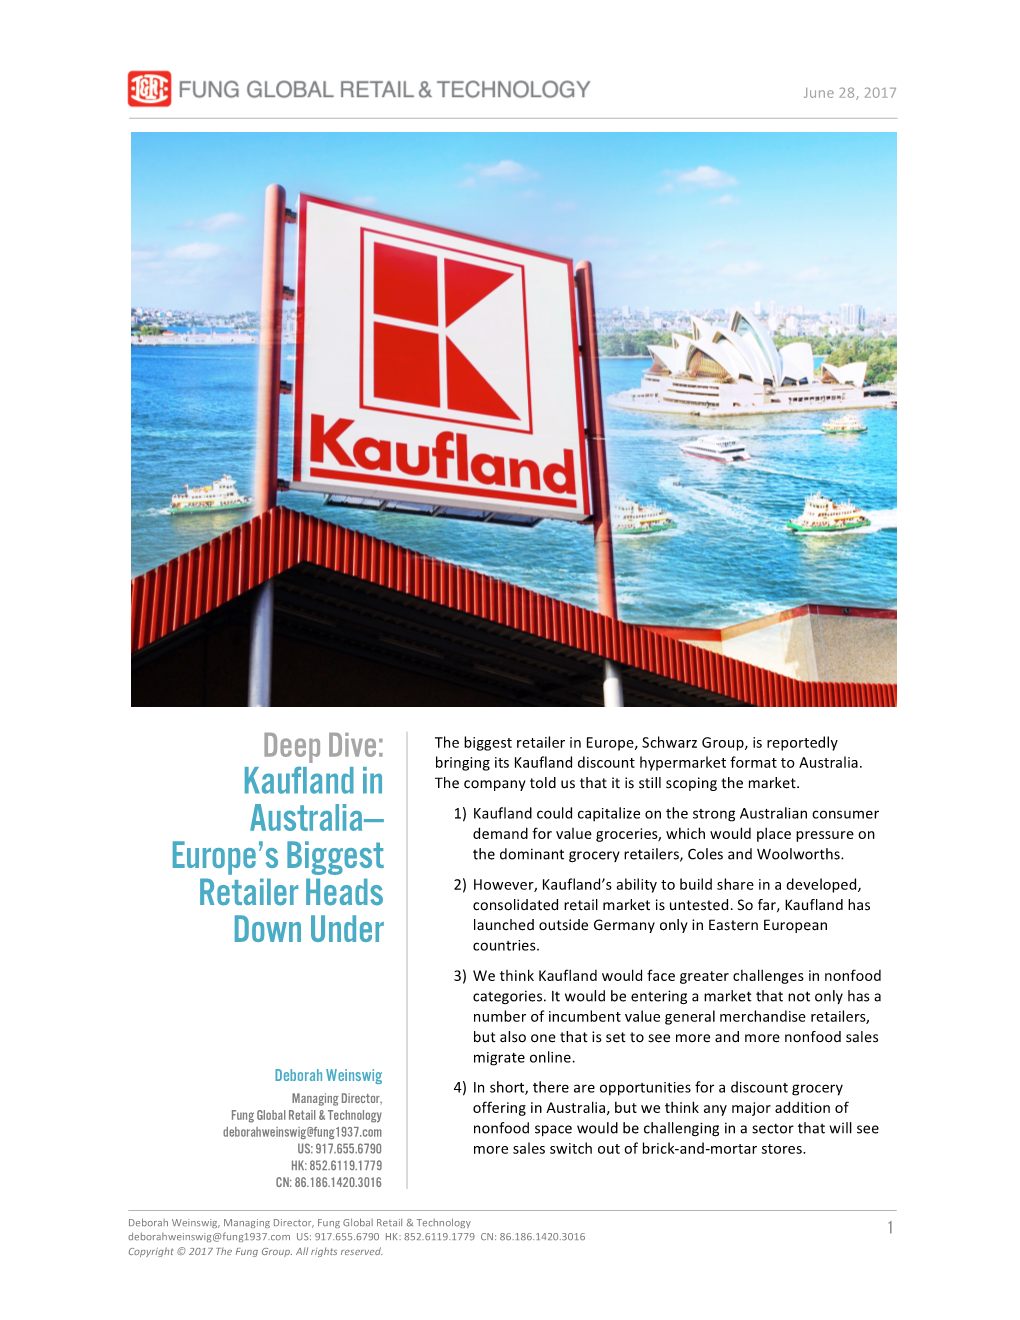 Kaufland in Australia— Europe's Biggest Retailer Heads Down Under